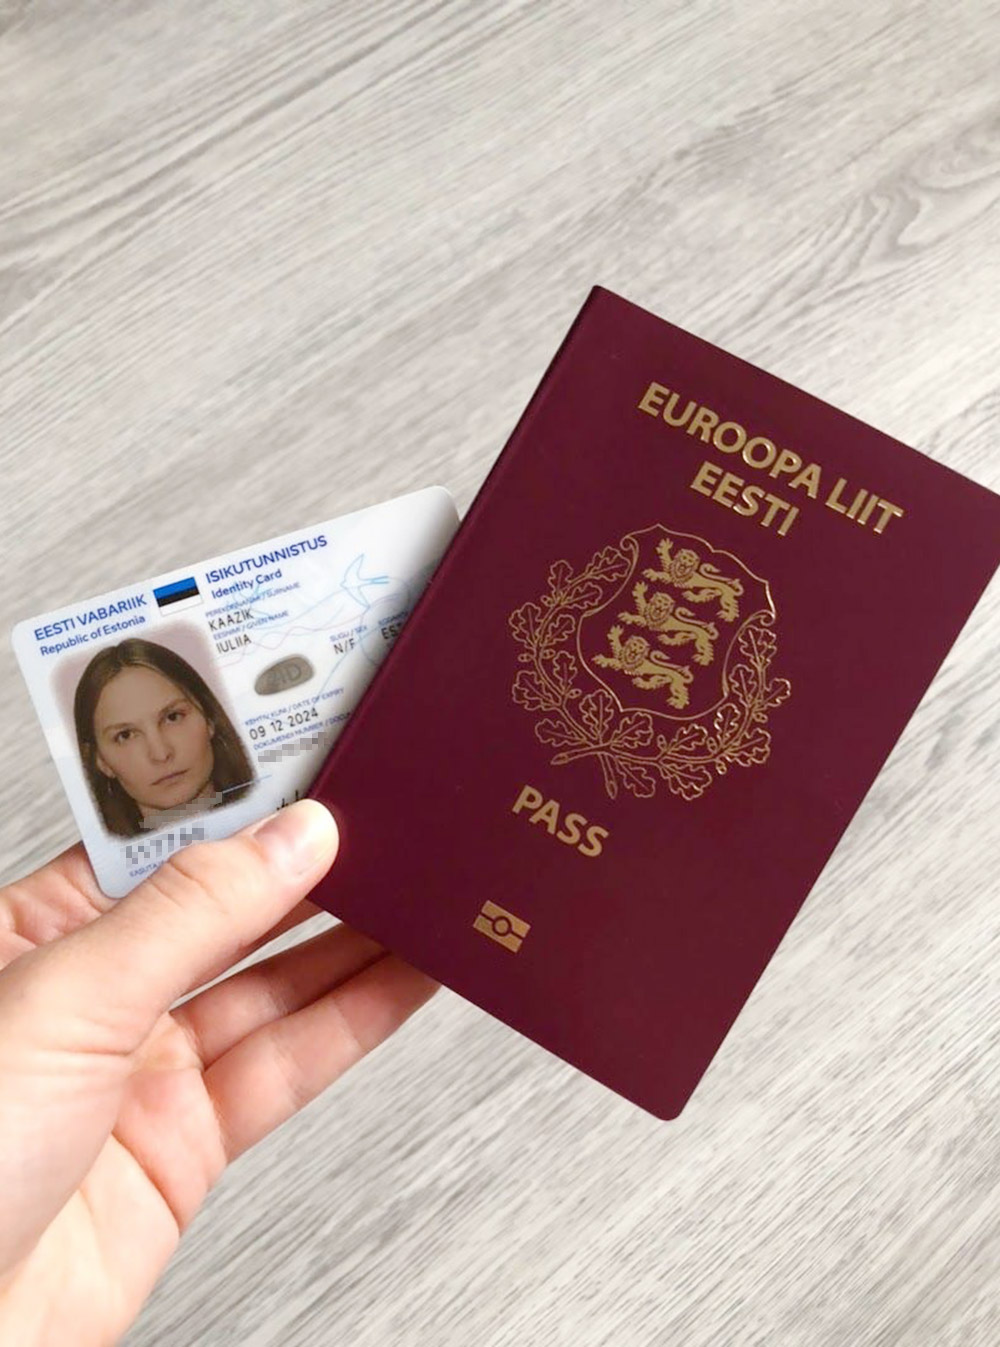 Мои новенькие паспорт и ID-карта. Планировала обмыть их поездкой в Европу на майские праздники, но в 2020 году у коронавируса свои планы. Поездку пришлось отложить на неопределенный срок